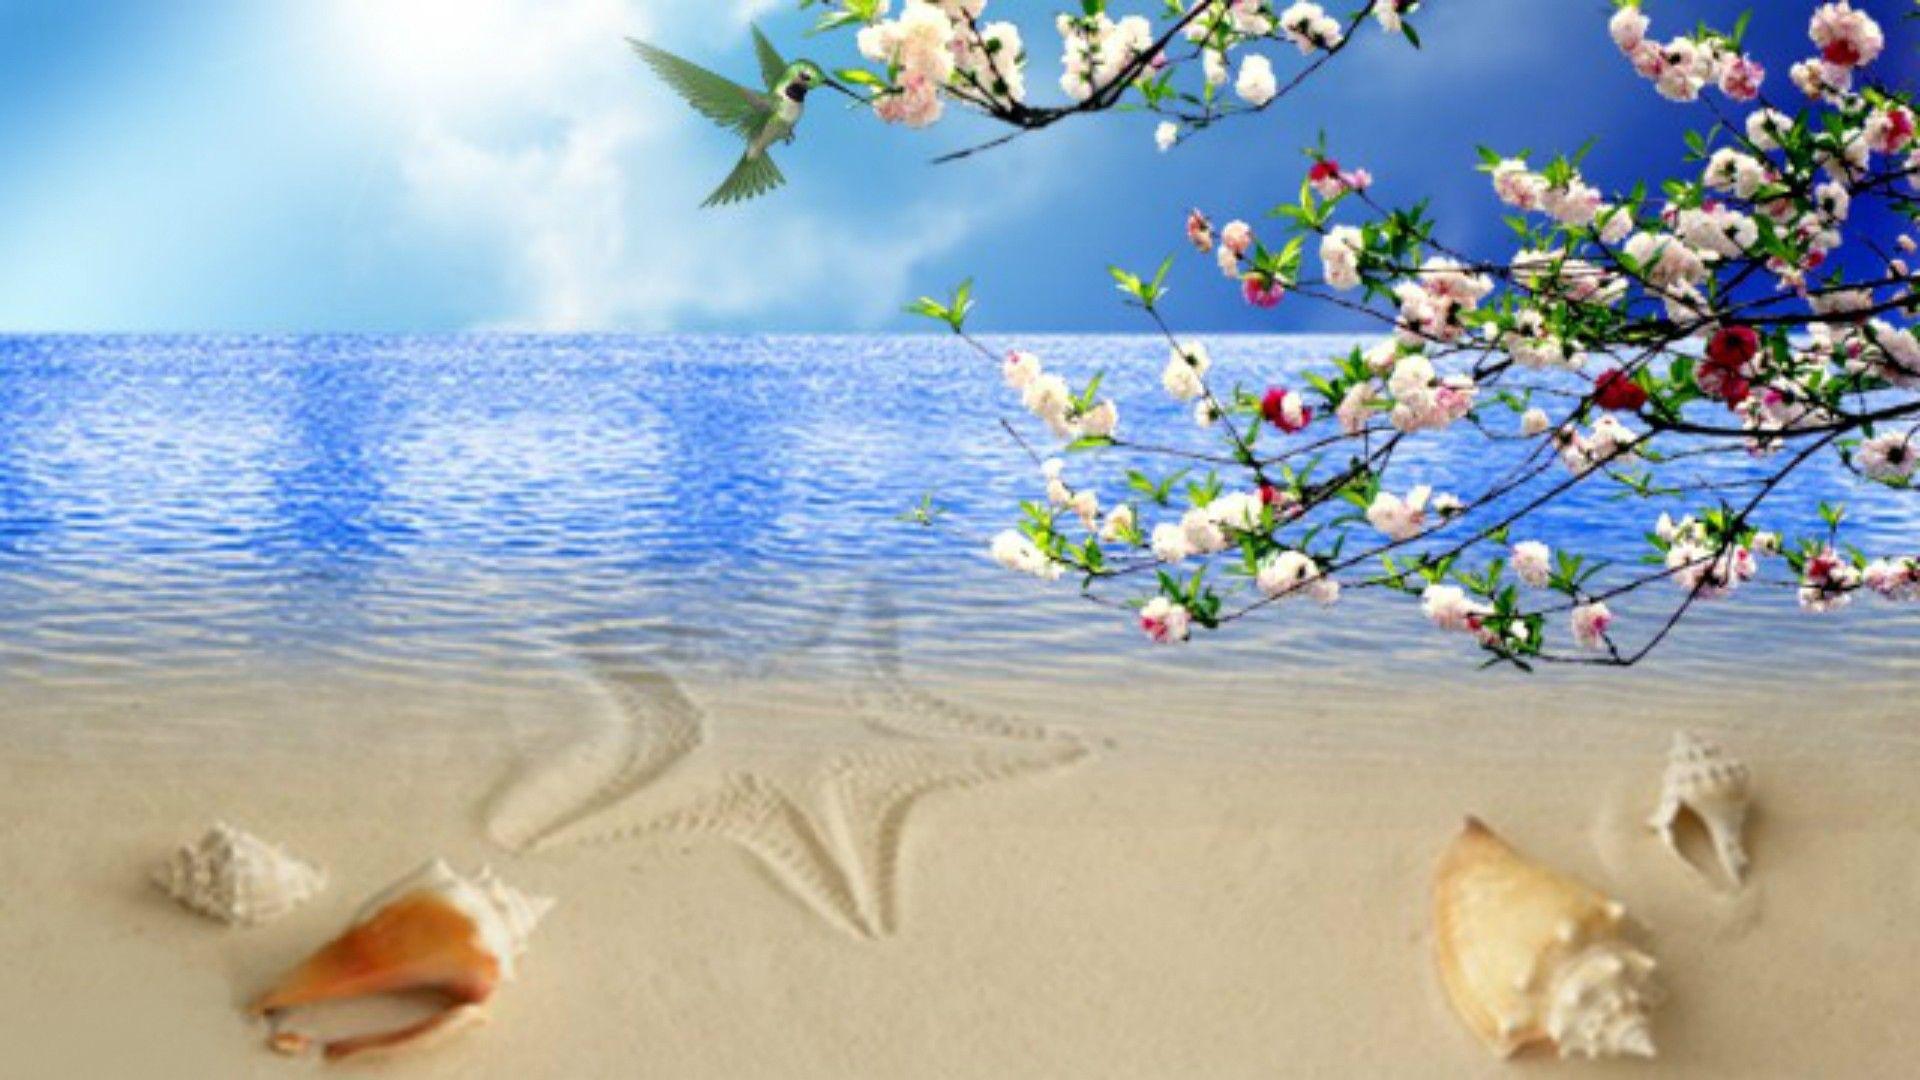 Bãi biển 1920x1080: Hoa vỏ sò Bầu trời biển xanh Bãi biển chim ruồi 3840x1080